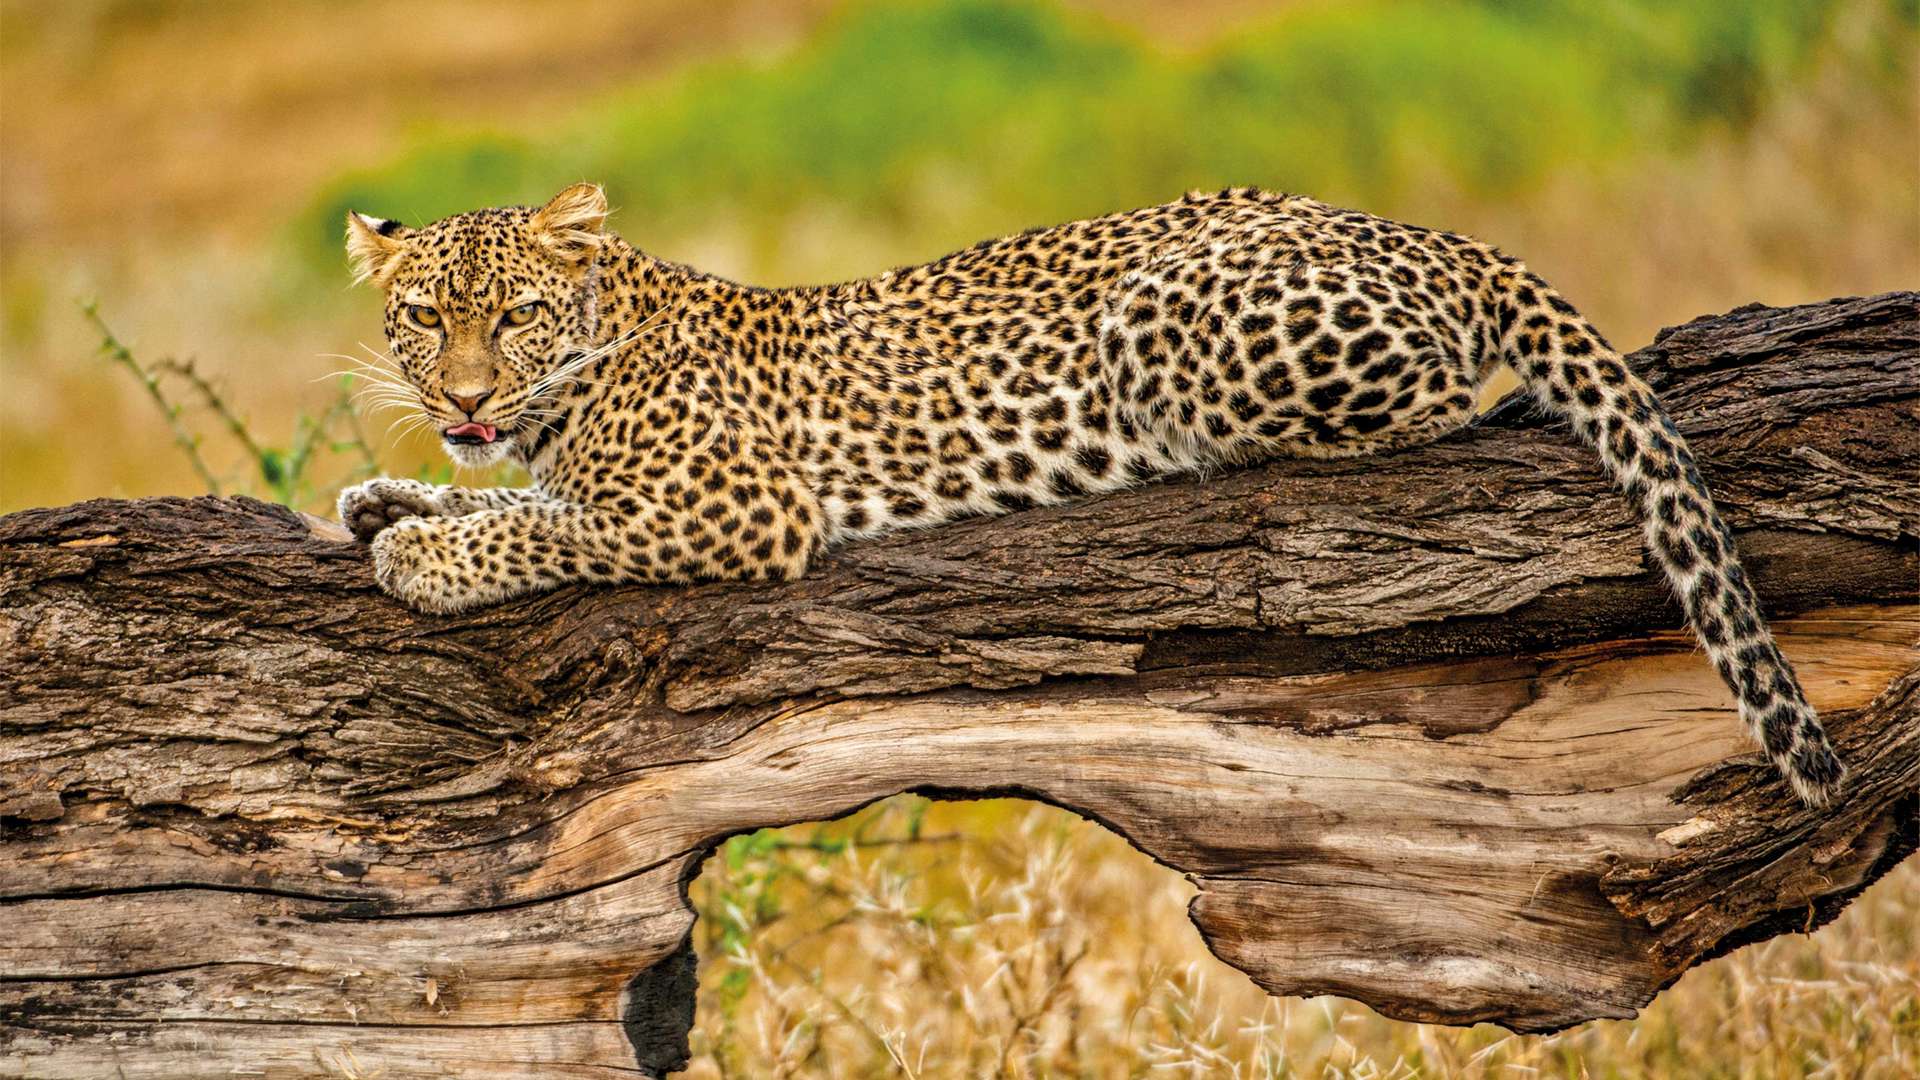 Leopard In Tree, Botswana